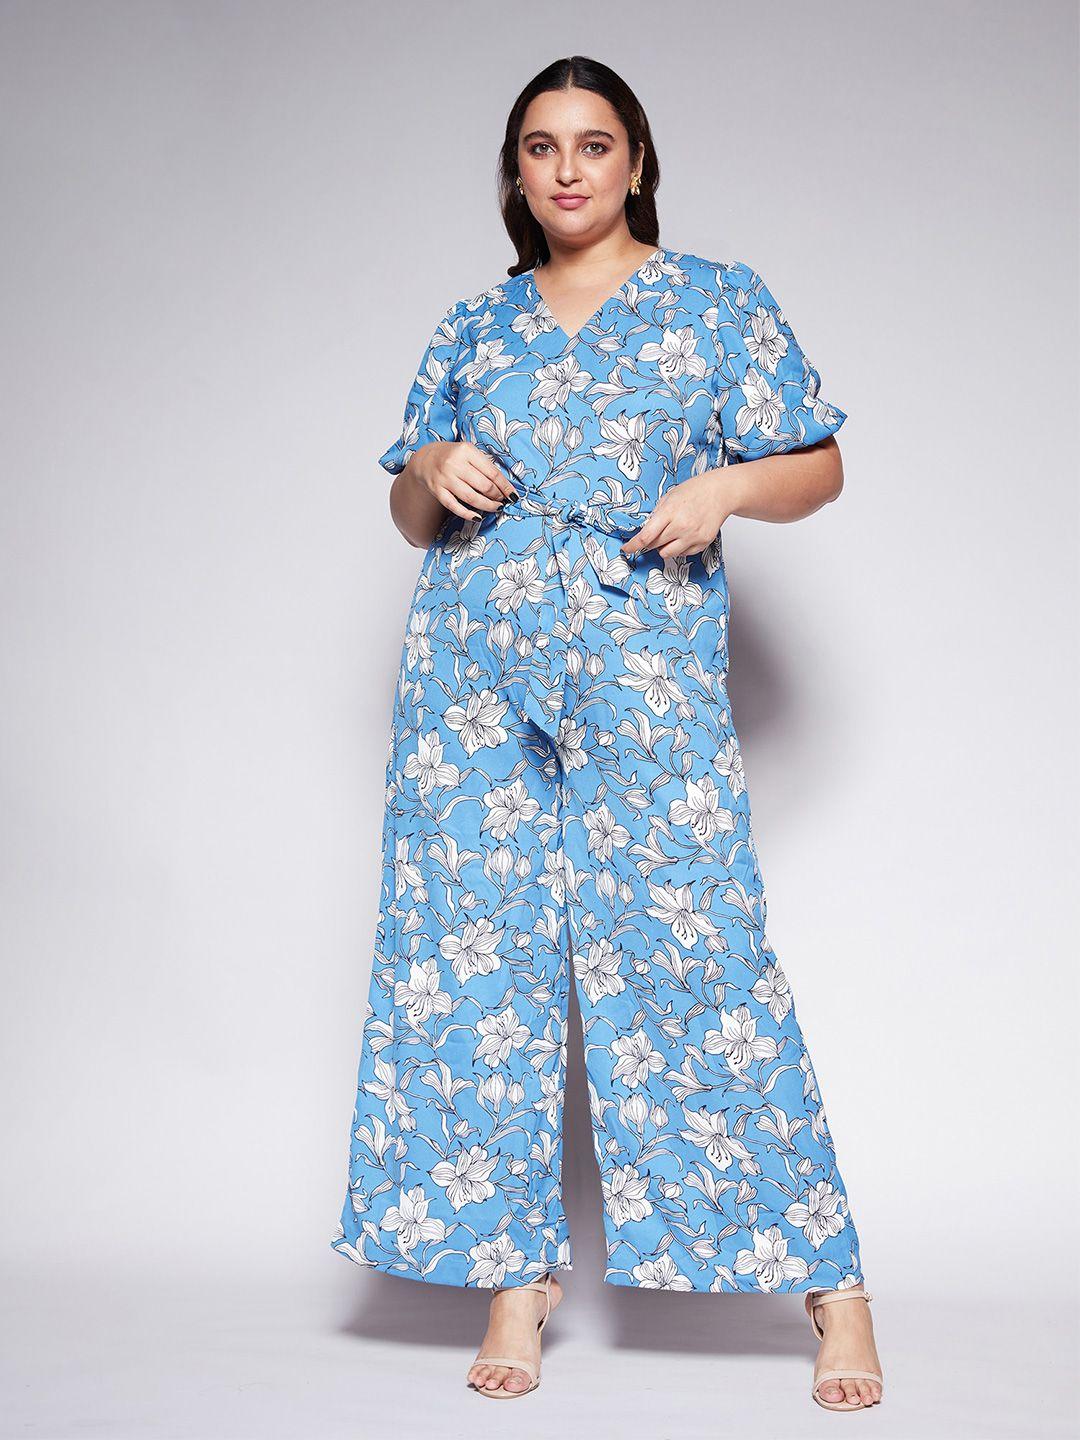 20dresses-floral-printed-v-neck-wide-leg-work-jumpsuit